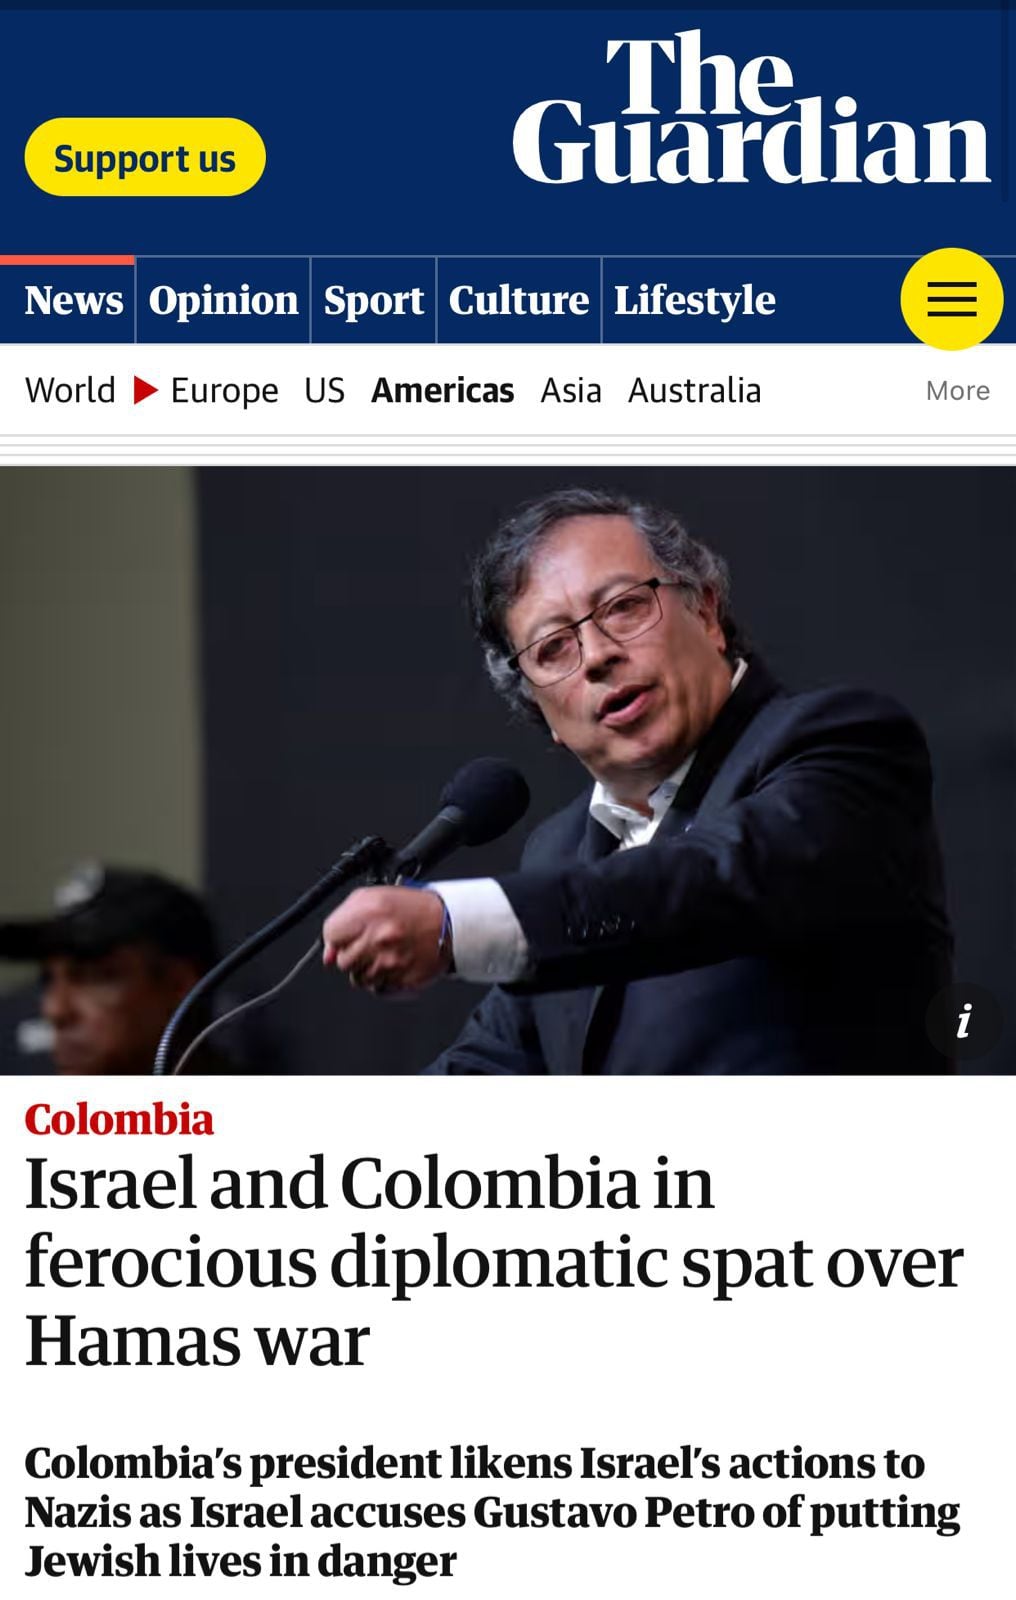 El diario aseguró que La guerra entre Israel y Hamas ha provocado una feroz disputa diplomática entre Israel y Colombia